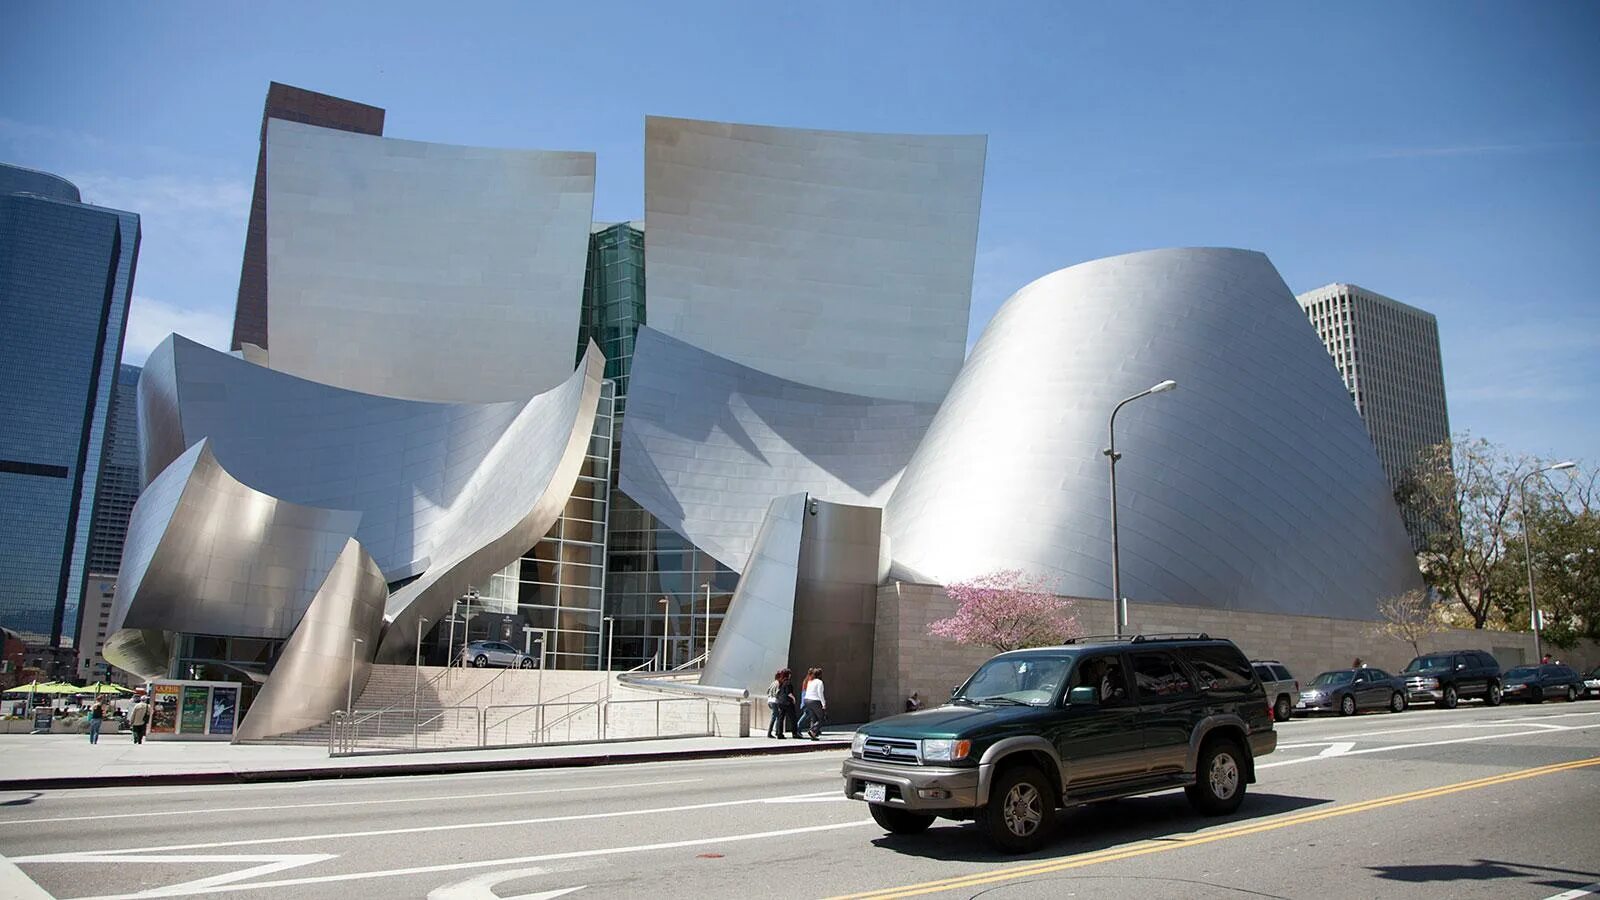 Концертный зал дисней. Фрэнк Гери музей Уолта Диснея. Фрэнк Гери концертный зал. Концертный зал Уолта Диснея в Лос-Анджелесе, США. Здание концертного зала имени Уолта Диснея в Лос-Анджелесе.